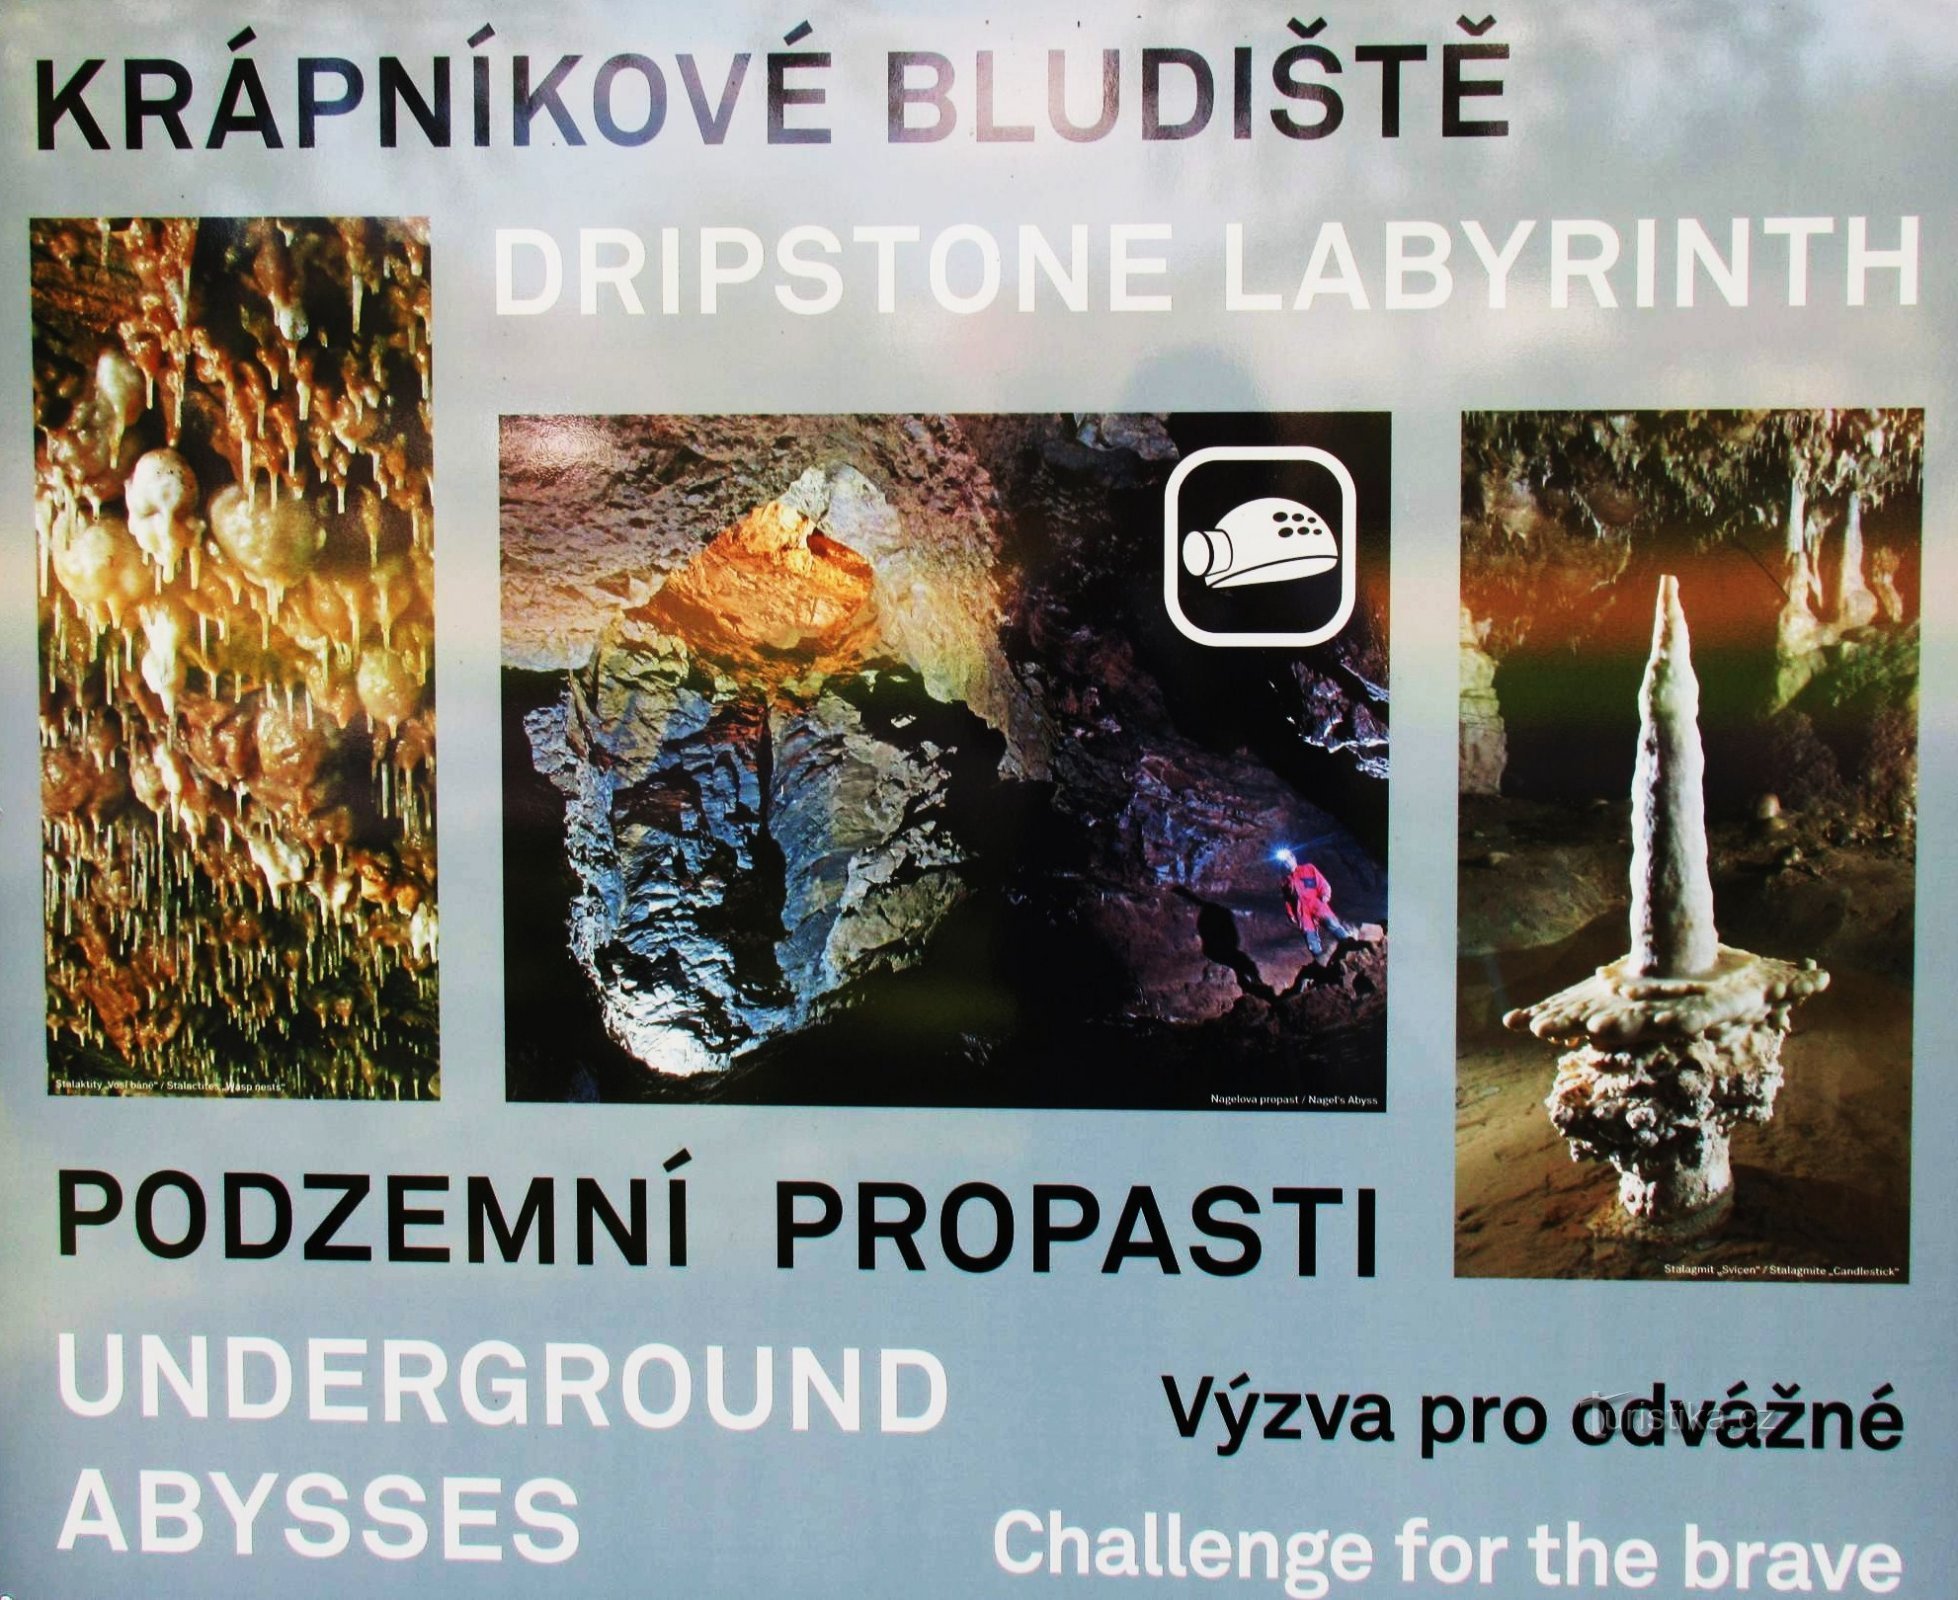 För upplevelser i Sloupsko - Šošůvské grottor